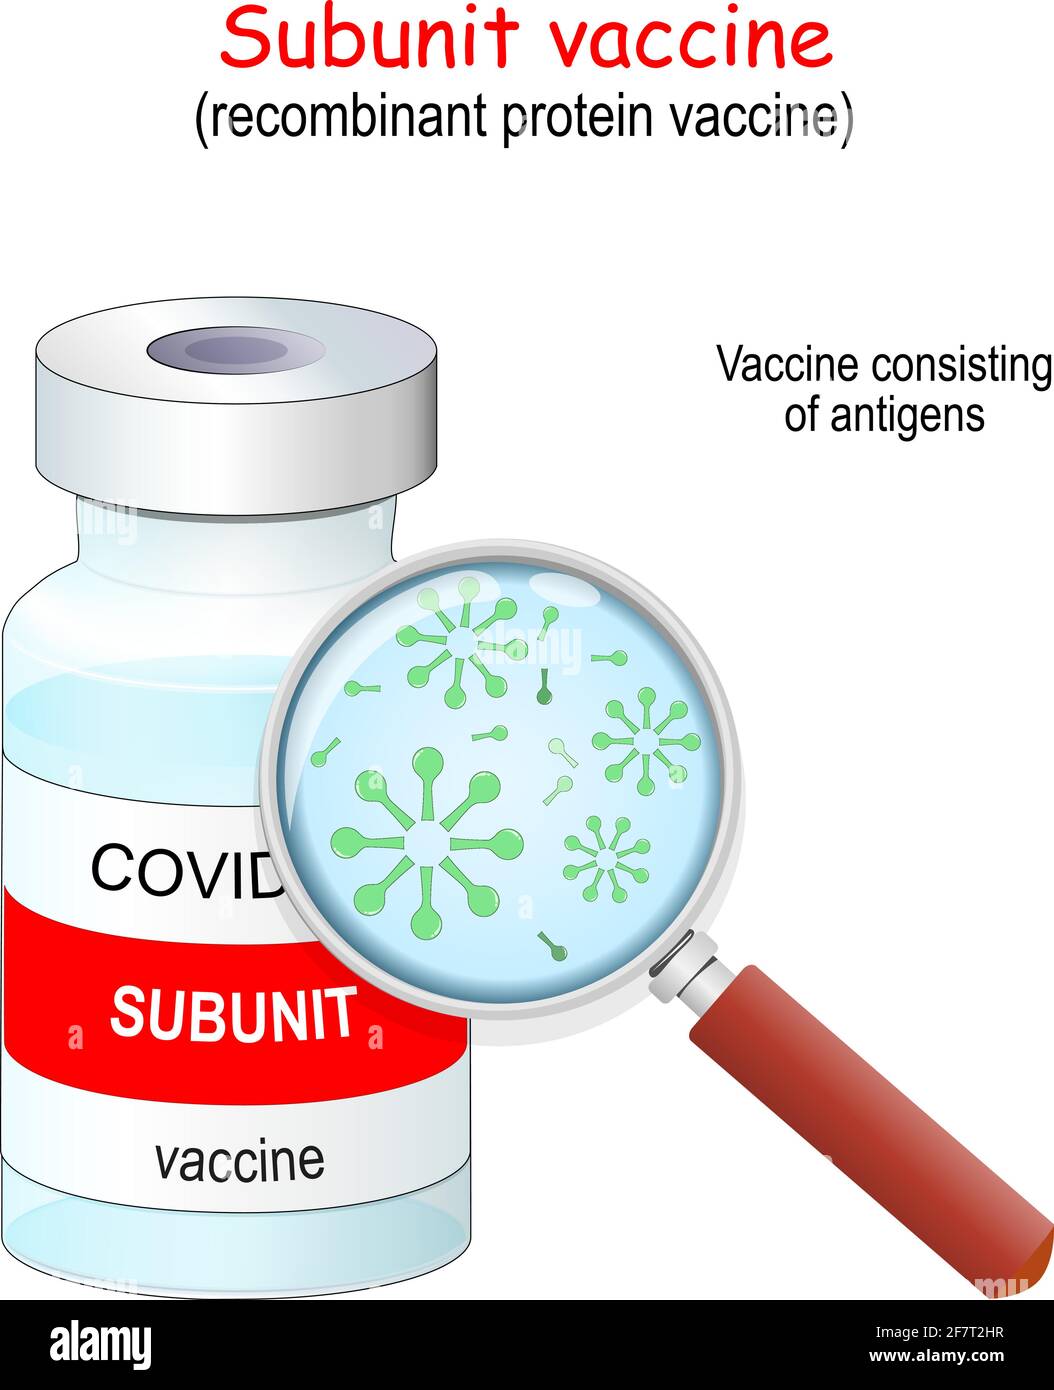 Coronavirus Covid-19. Vaccins protéiques recombinants. Vaccin sous-unitaire composé d'antigènes. Flacon de vaccin et loupe. Illustration vectorielle Illustration de Vecteur